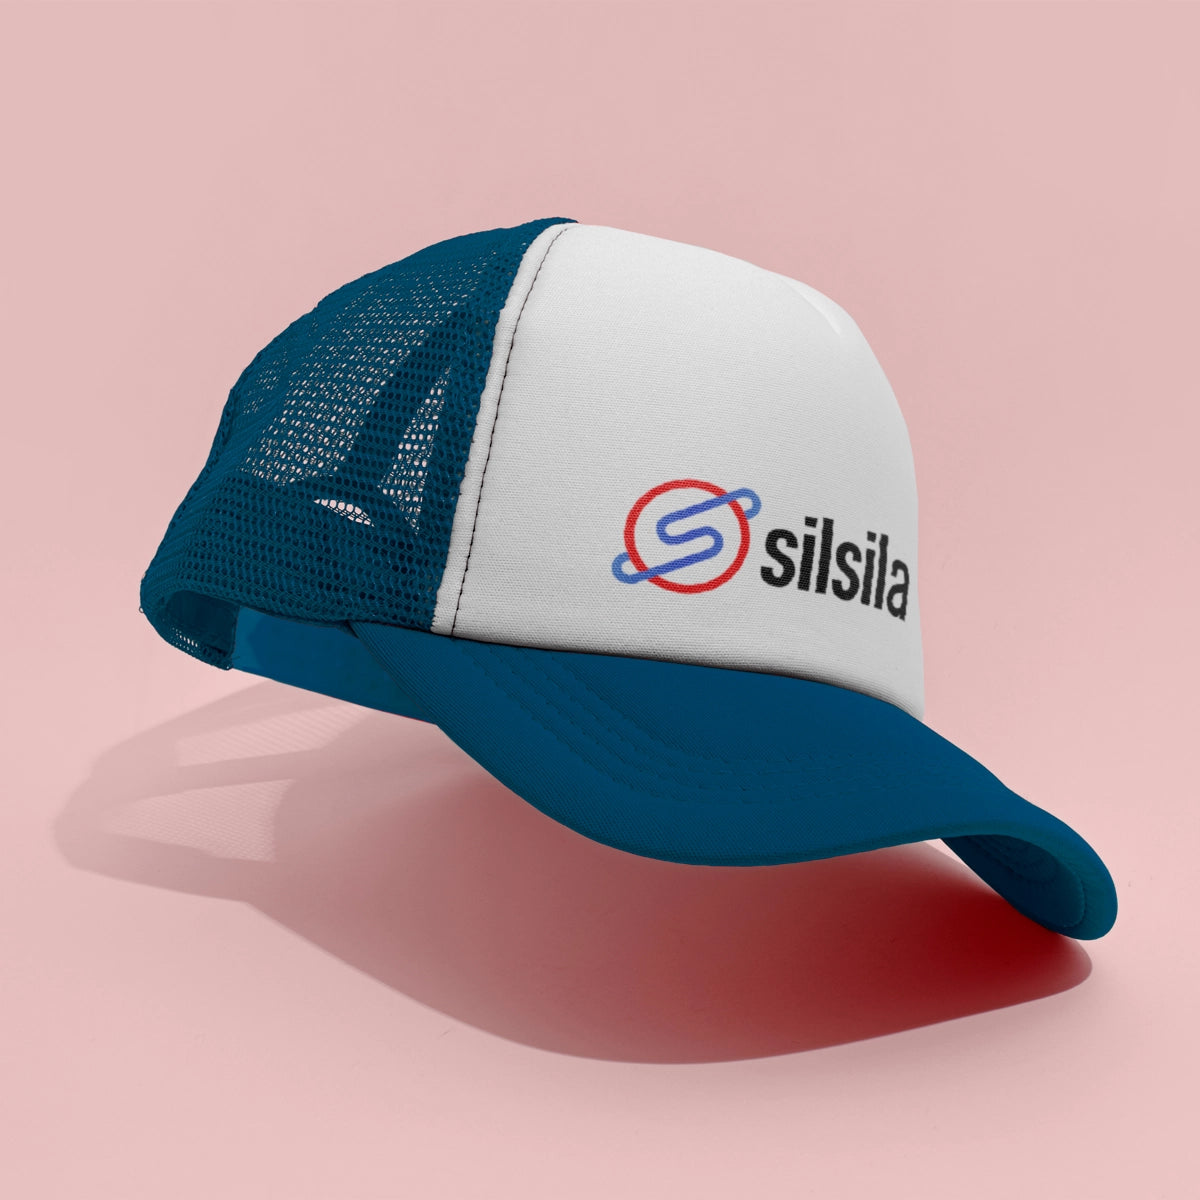 silsila.com